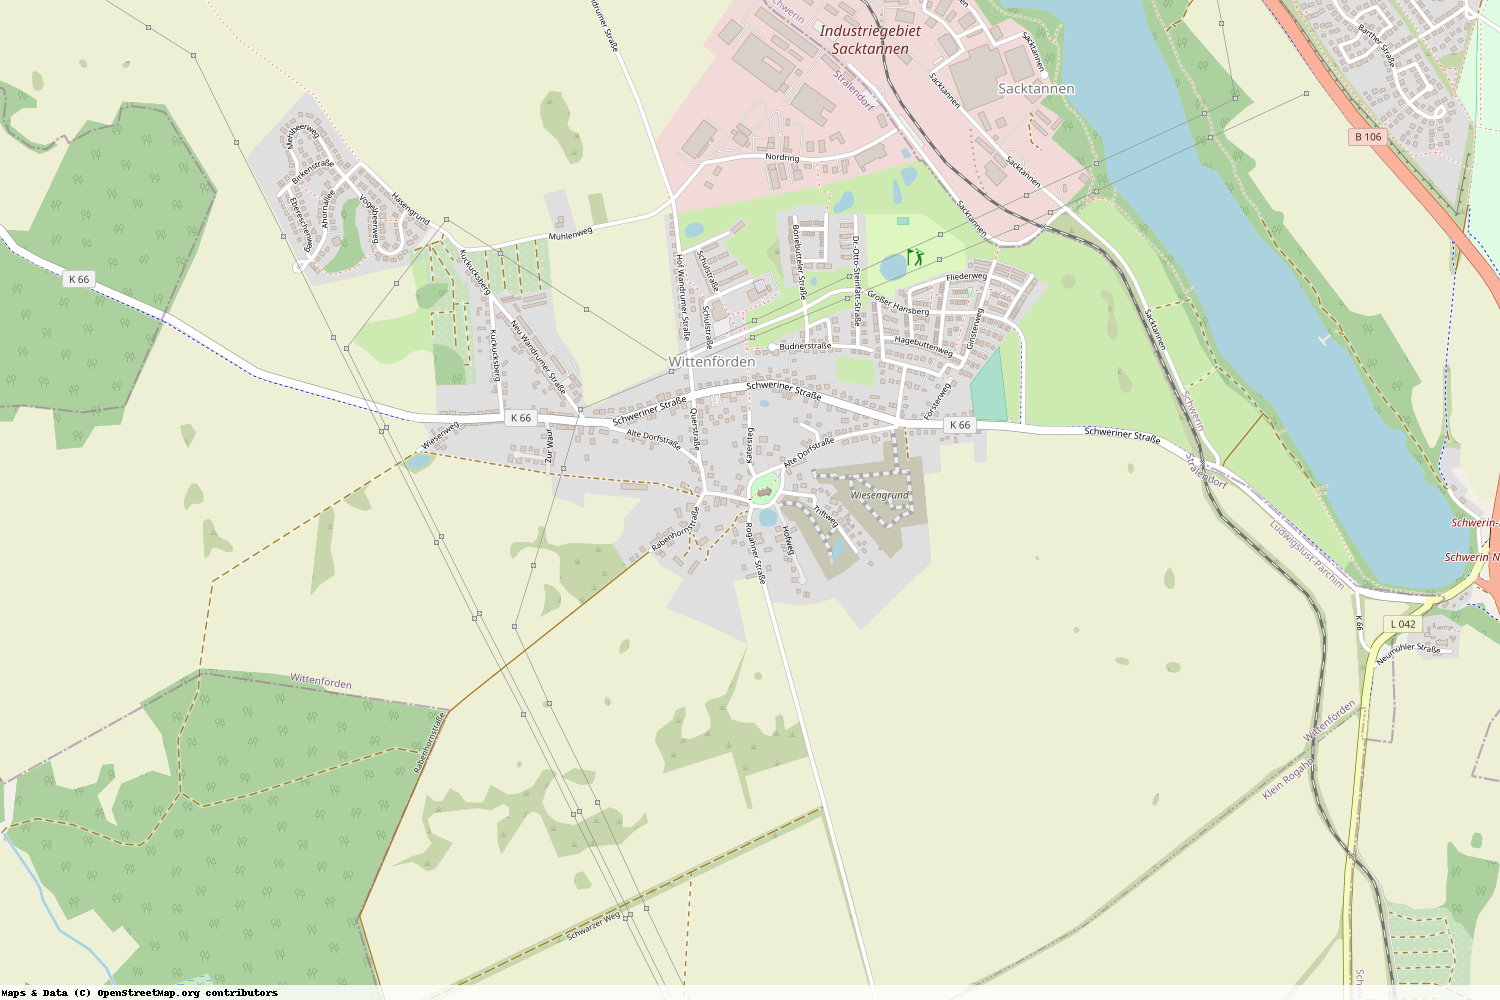 Ist gerade Stromausfall in Mecklenburg-Vorpommern - Ludwigslust-Parchim - Wittenförden?